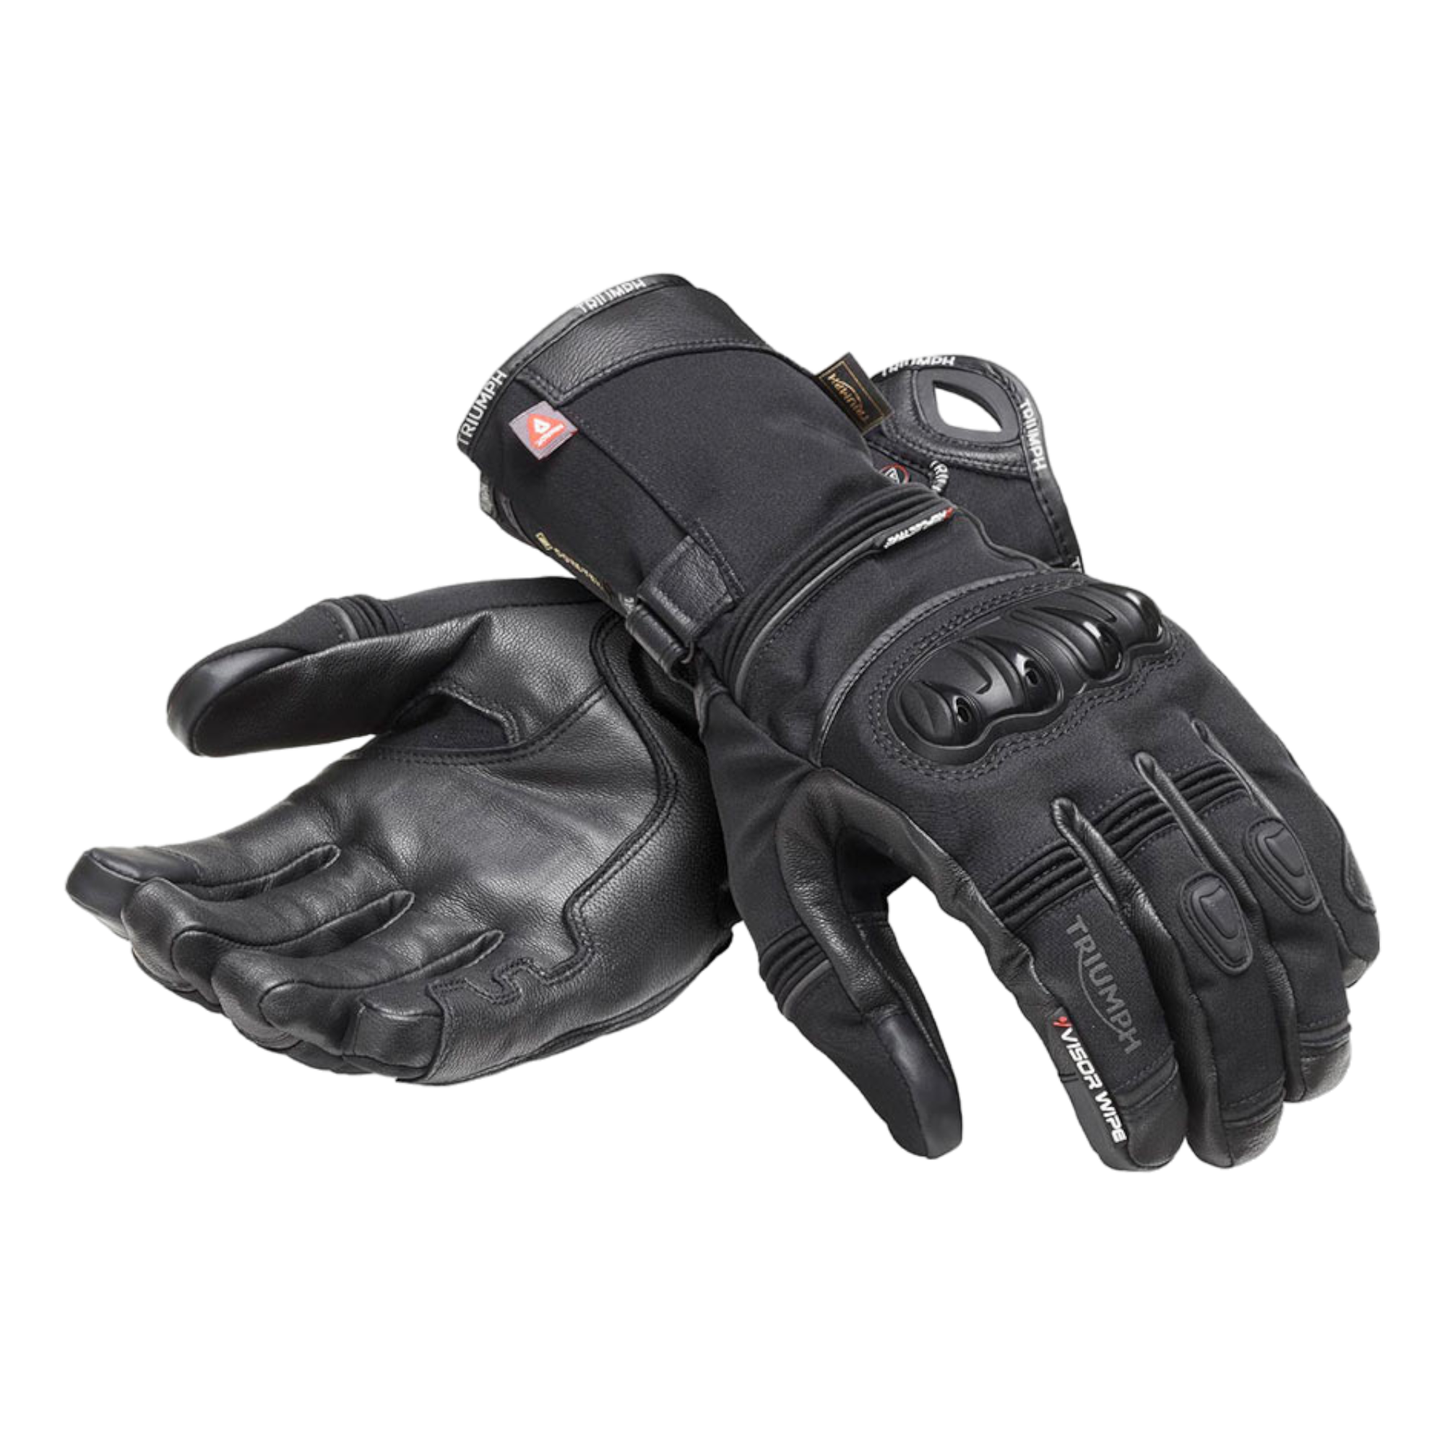 Triumph Dalsgaard GORE-TEX® Gloves with PrimaLoft® Insulation